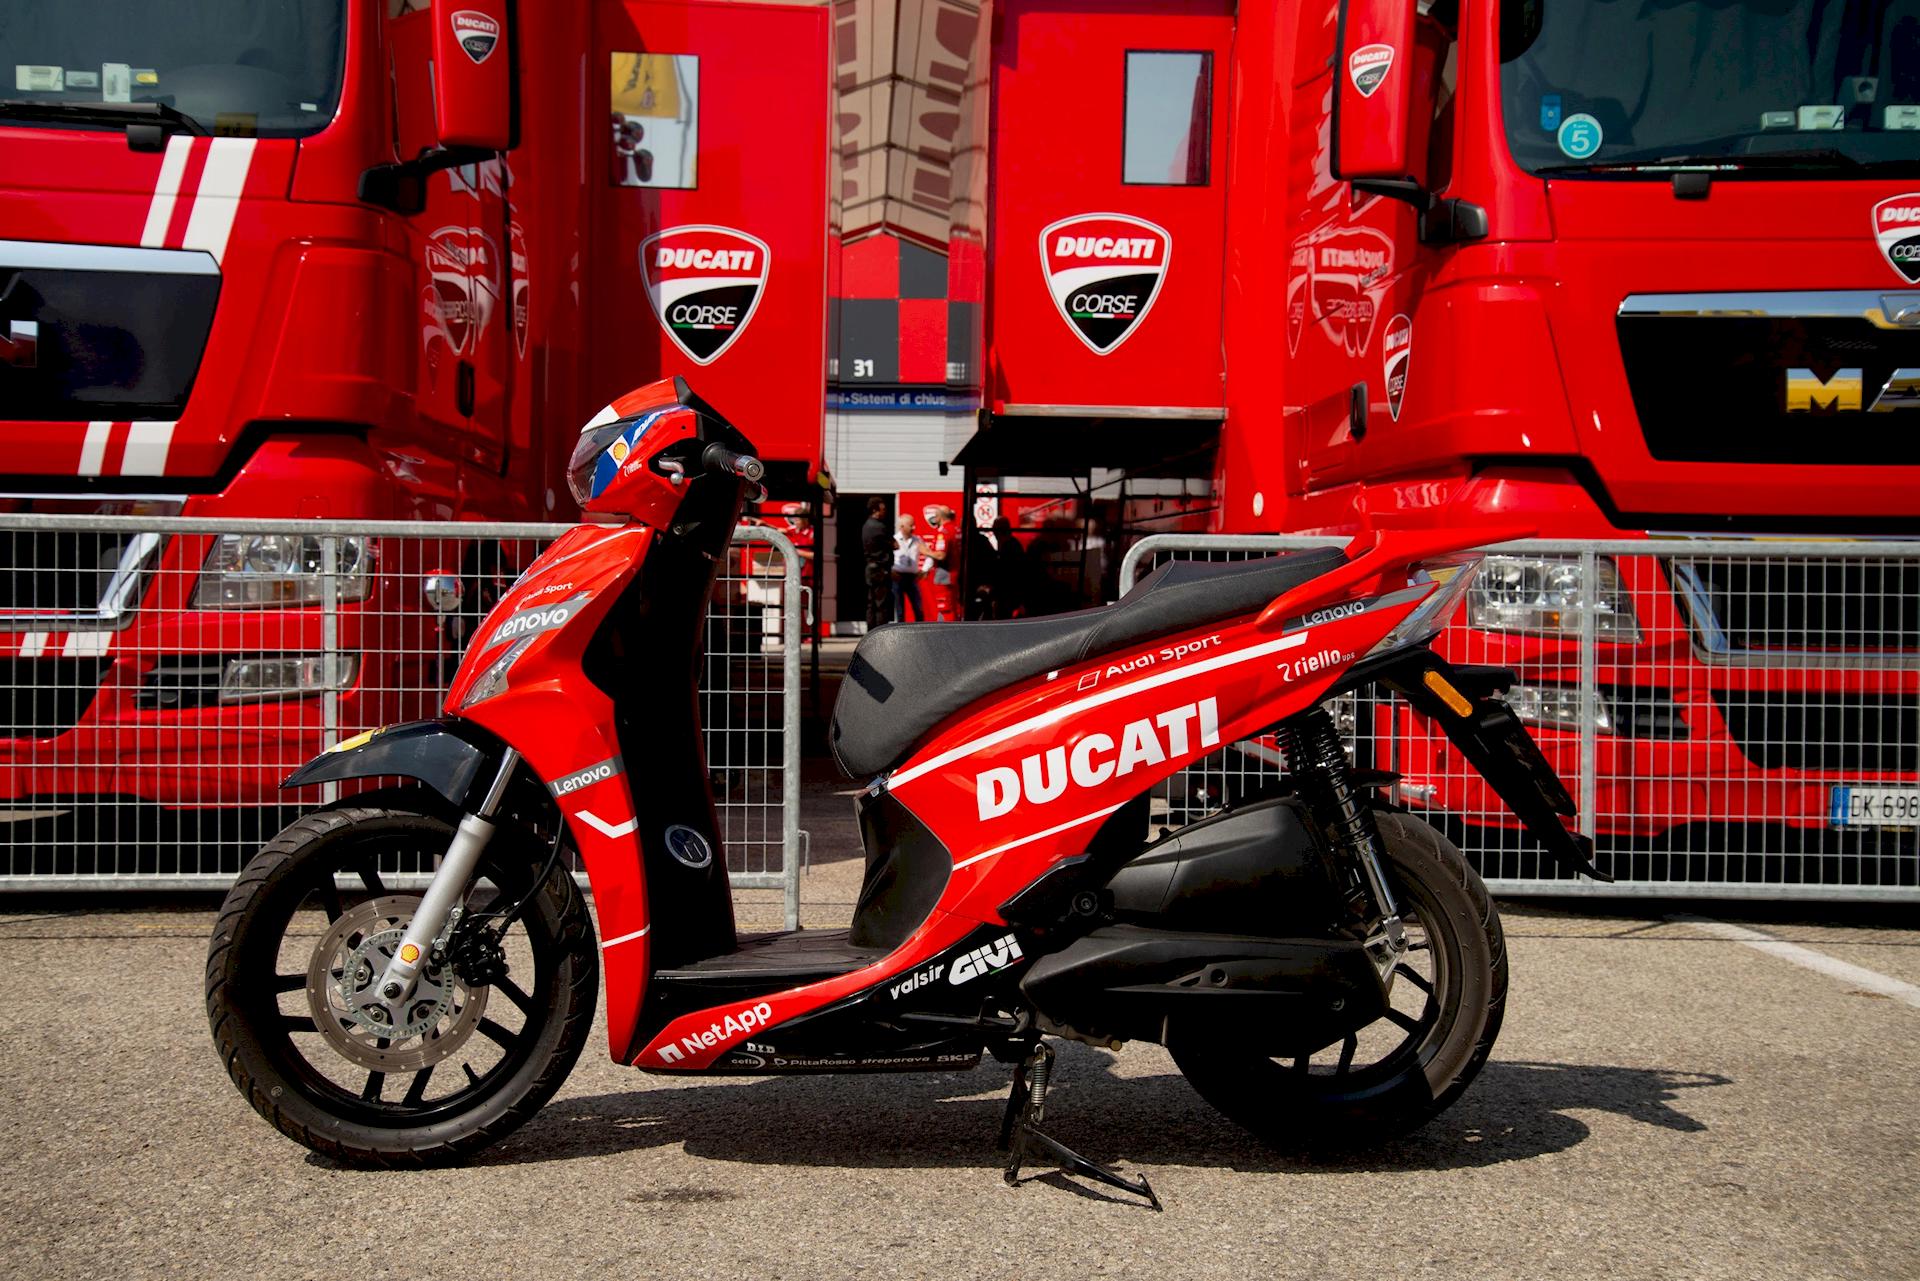 Kymco Ducati